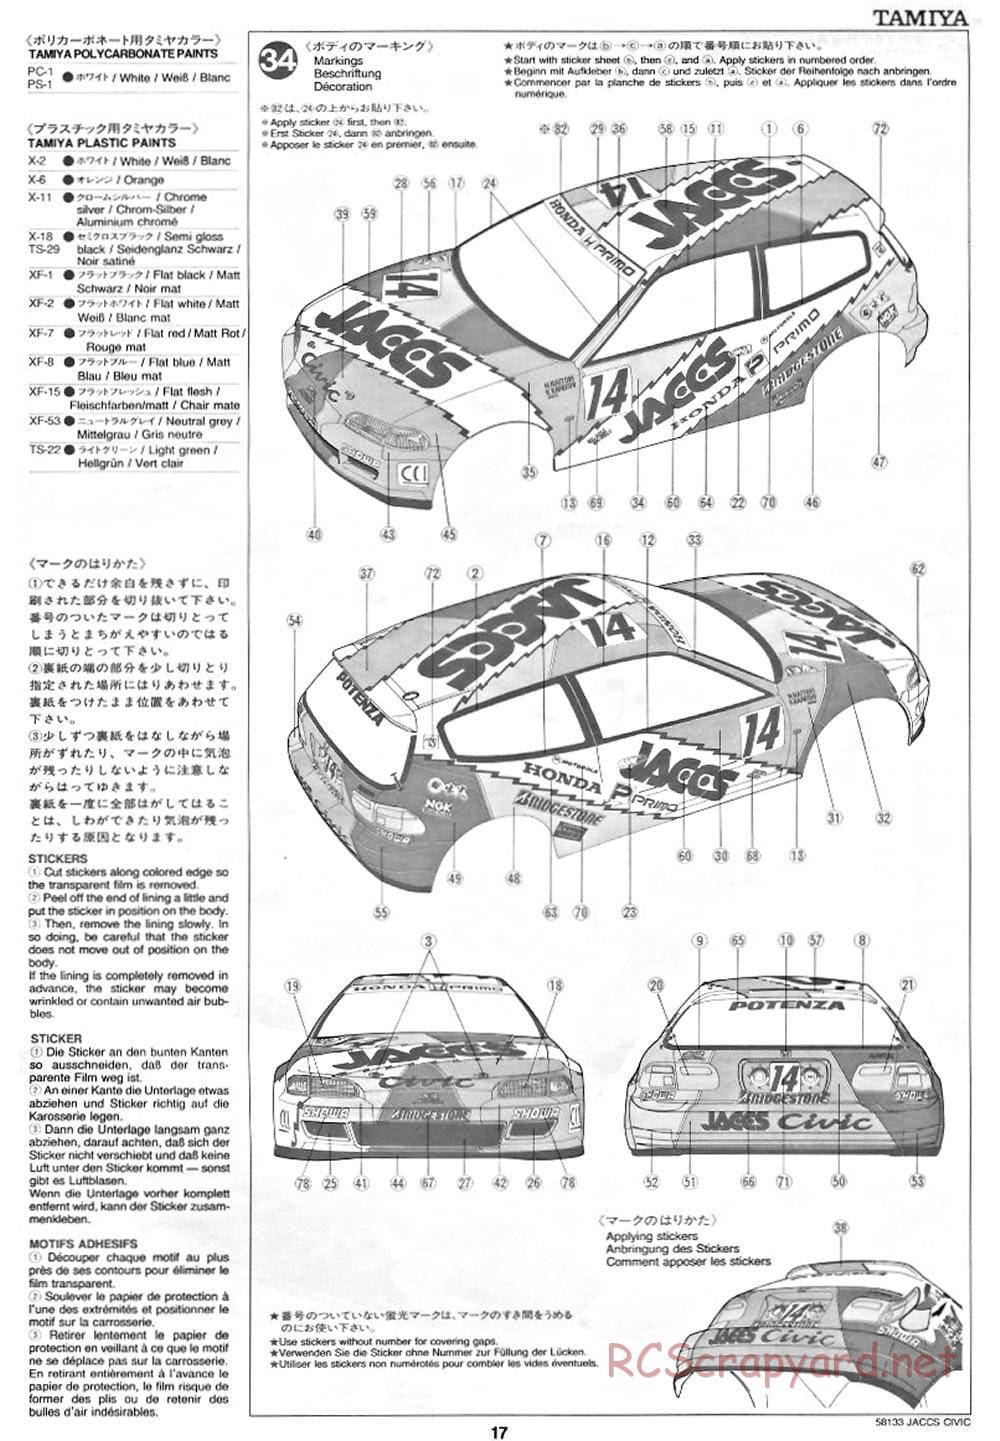 Tamiya - JACCS Honda Civic - FF-01 Chassis - Manual - Page 17